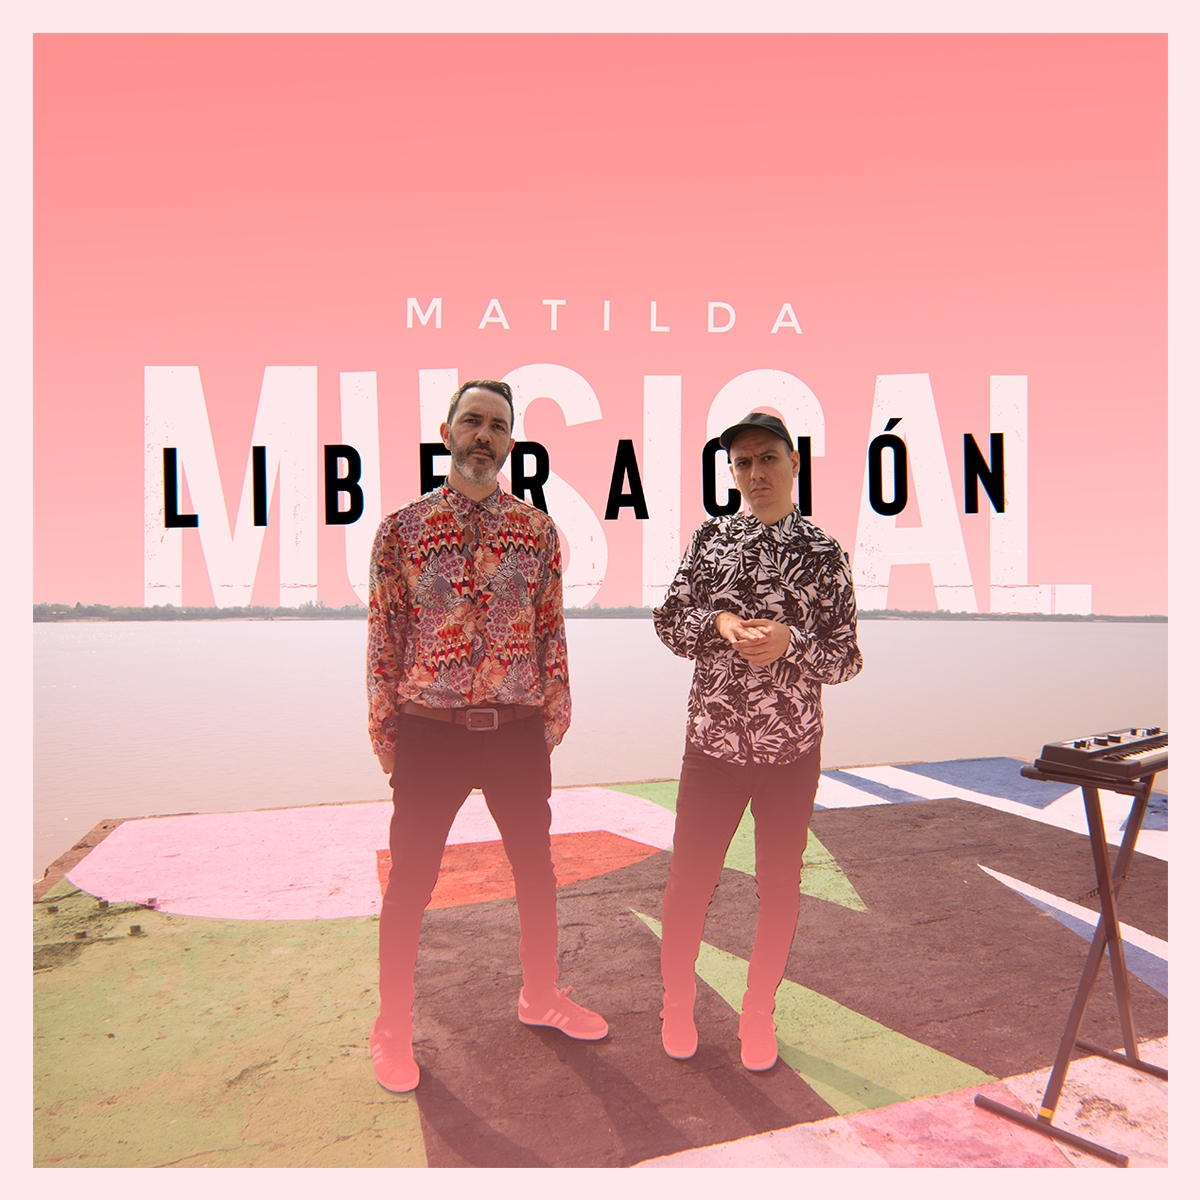  Matilda presenta “Musical liberación”